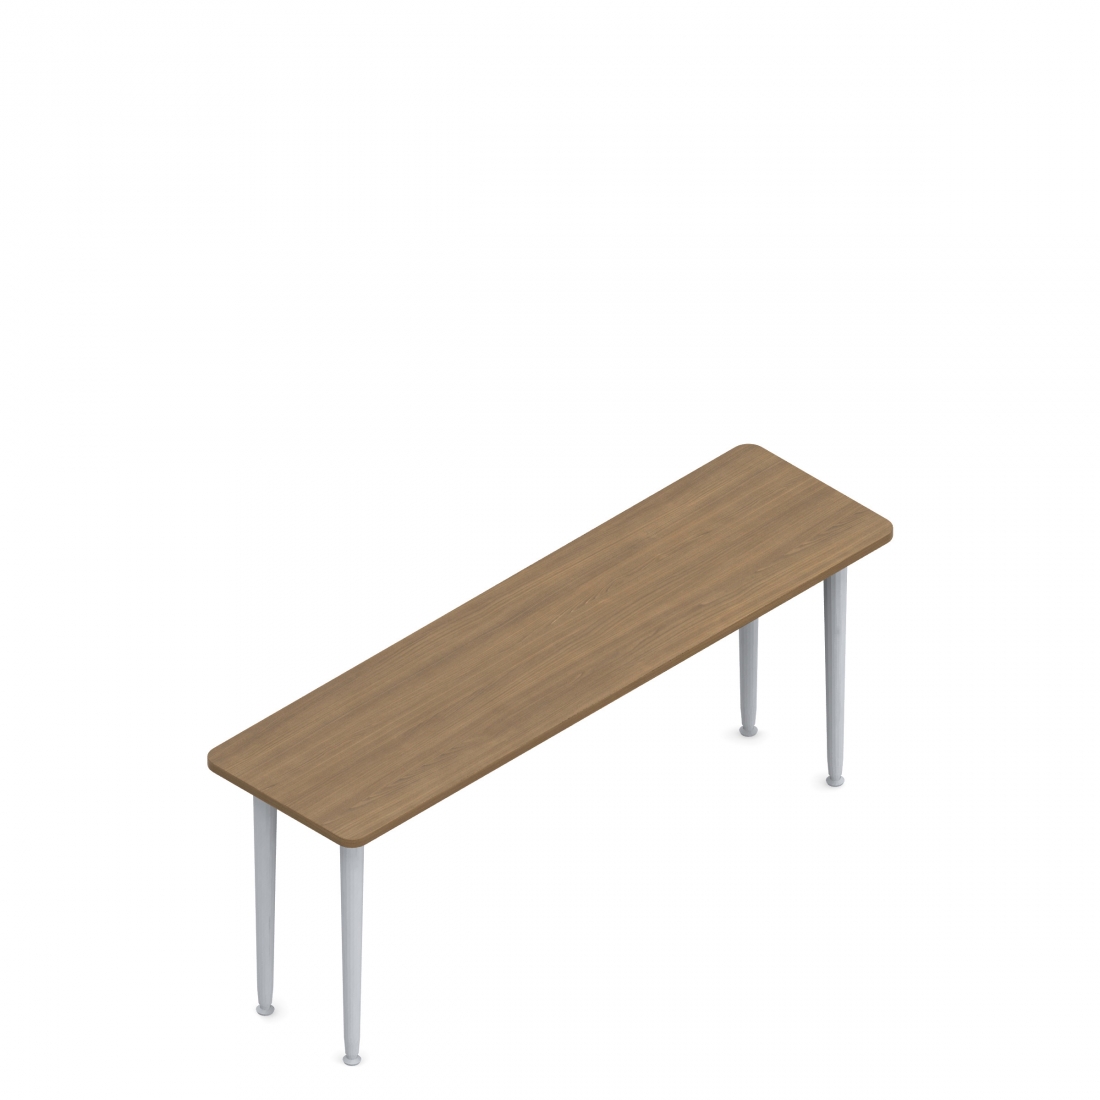 Rectangular Table, Tapered Legs, 60